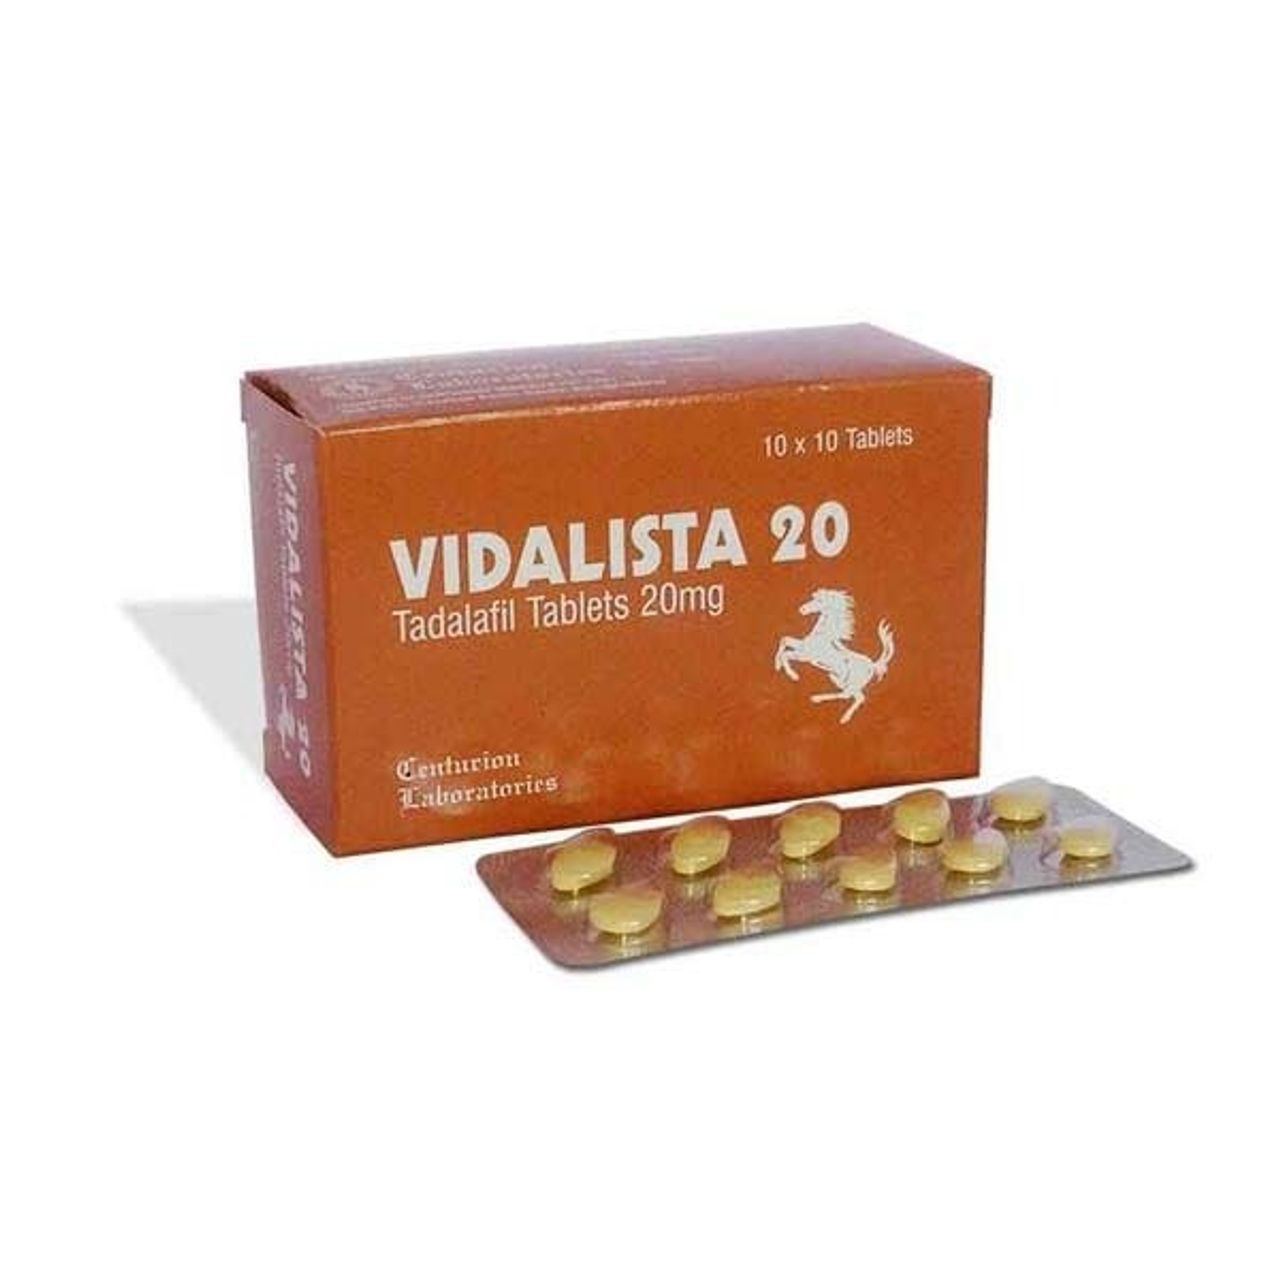 vidaaliista20